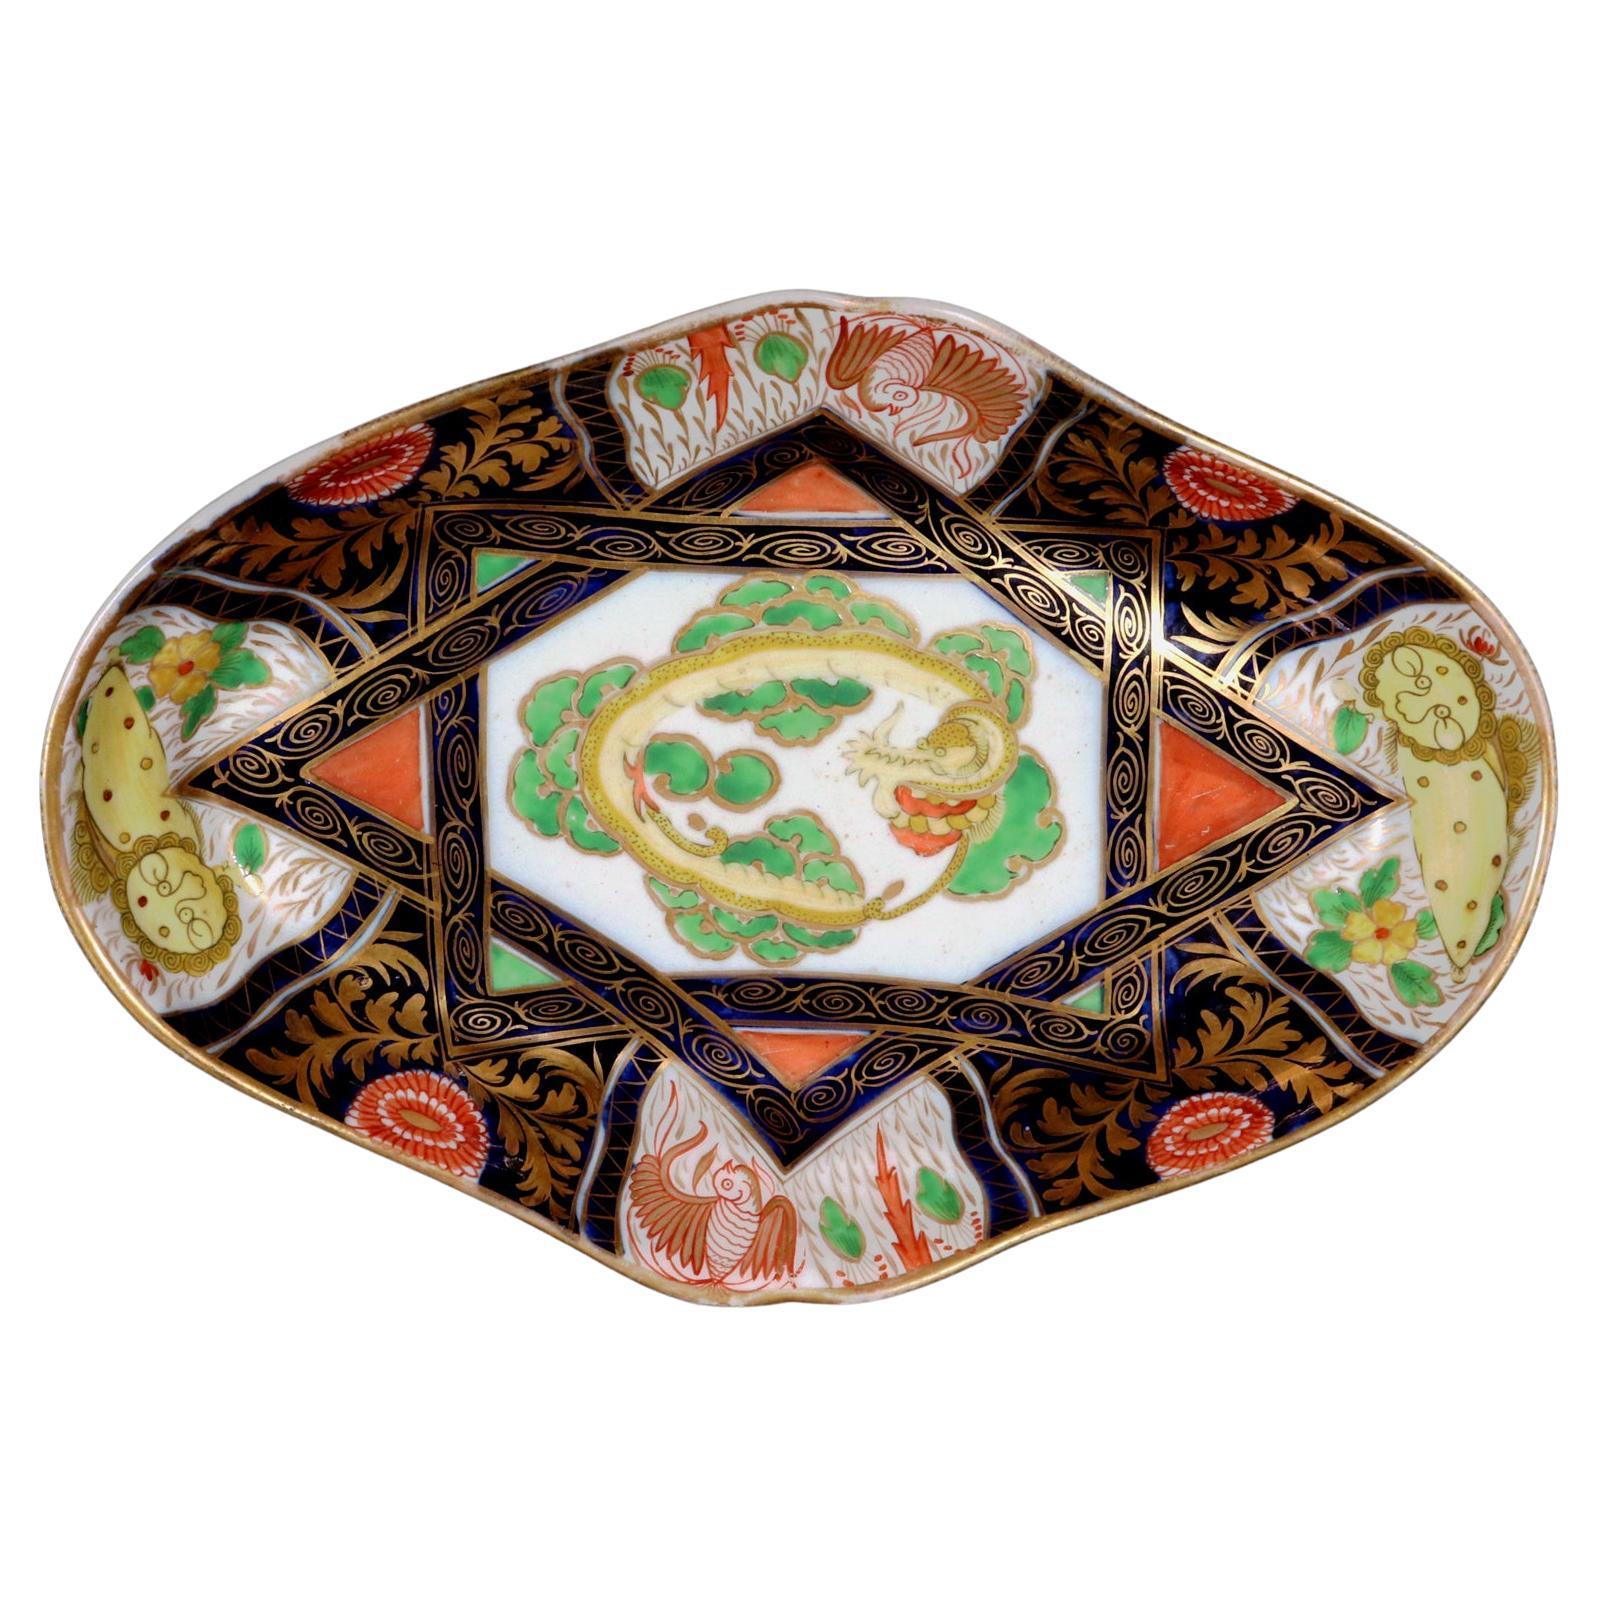 Plat Chinoiserie en porcelaine de Coalport d'époque Régence avec Dragon et Lions jaunes